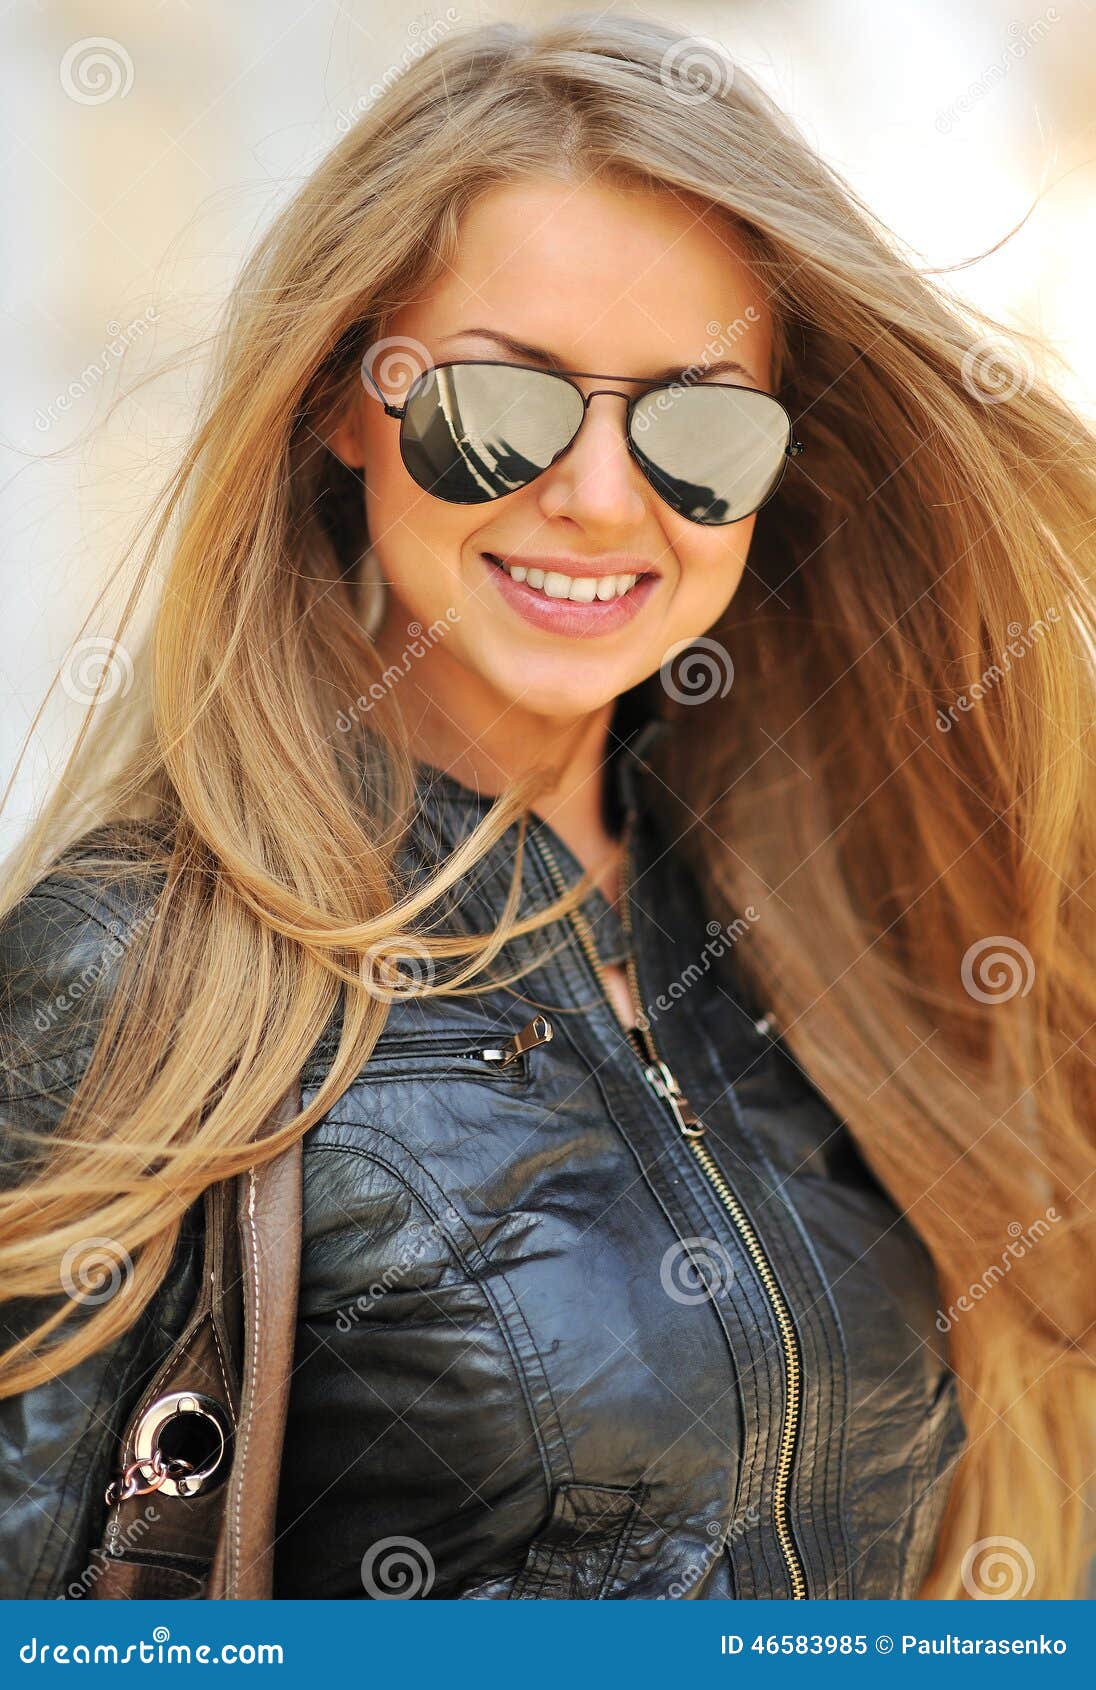 Forme El Retrato Las Gafas De Sol Que Llevan Sonrientes Hermosas De La Mujer - Imagen de archivo - Imagen de cierre, 46583985